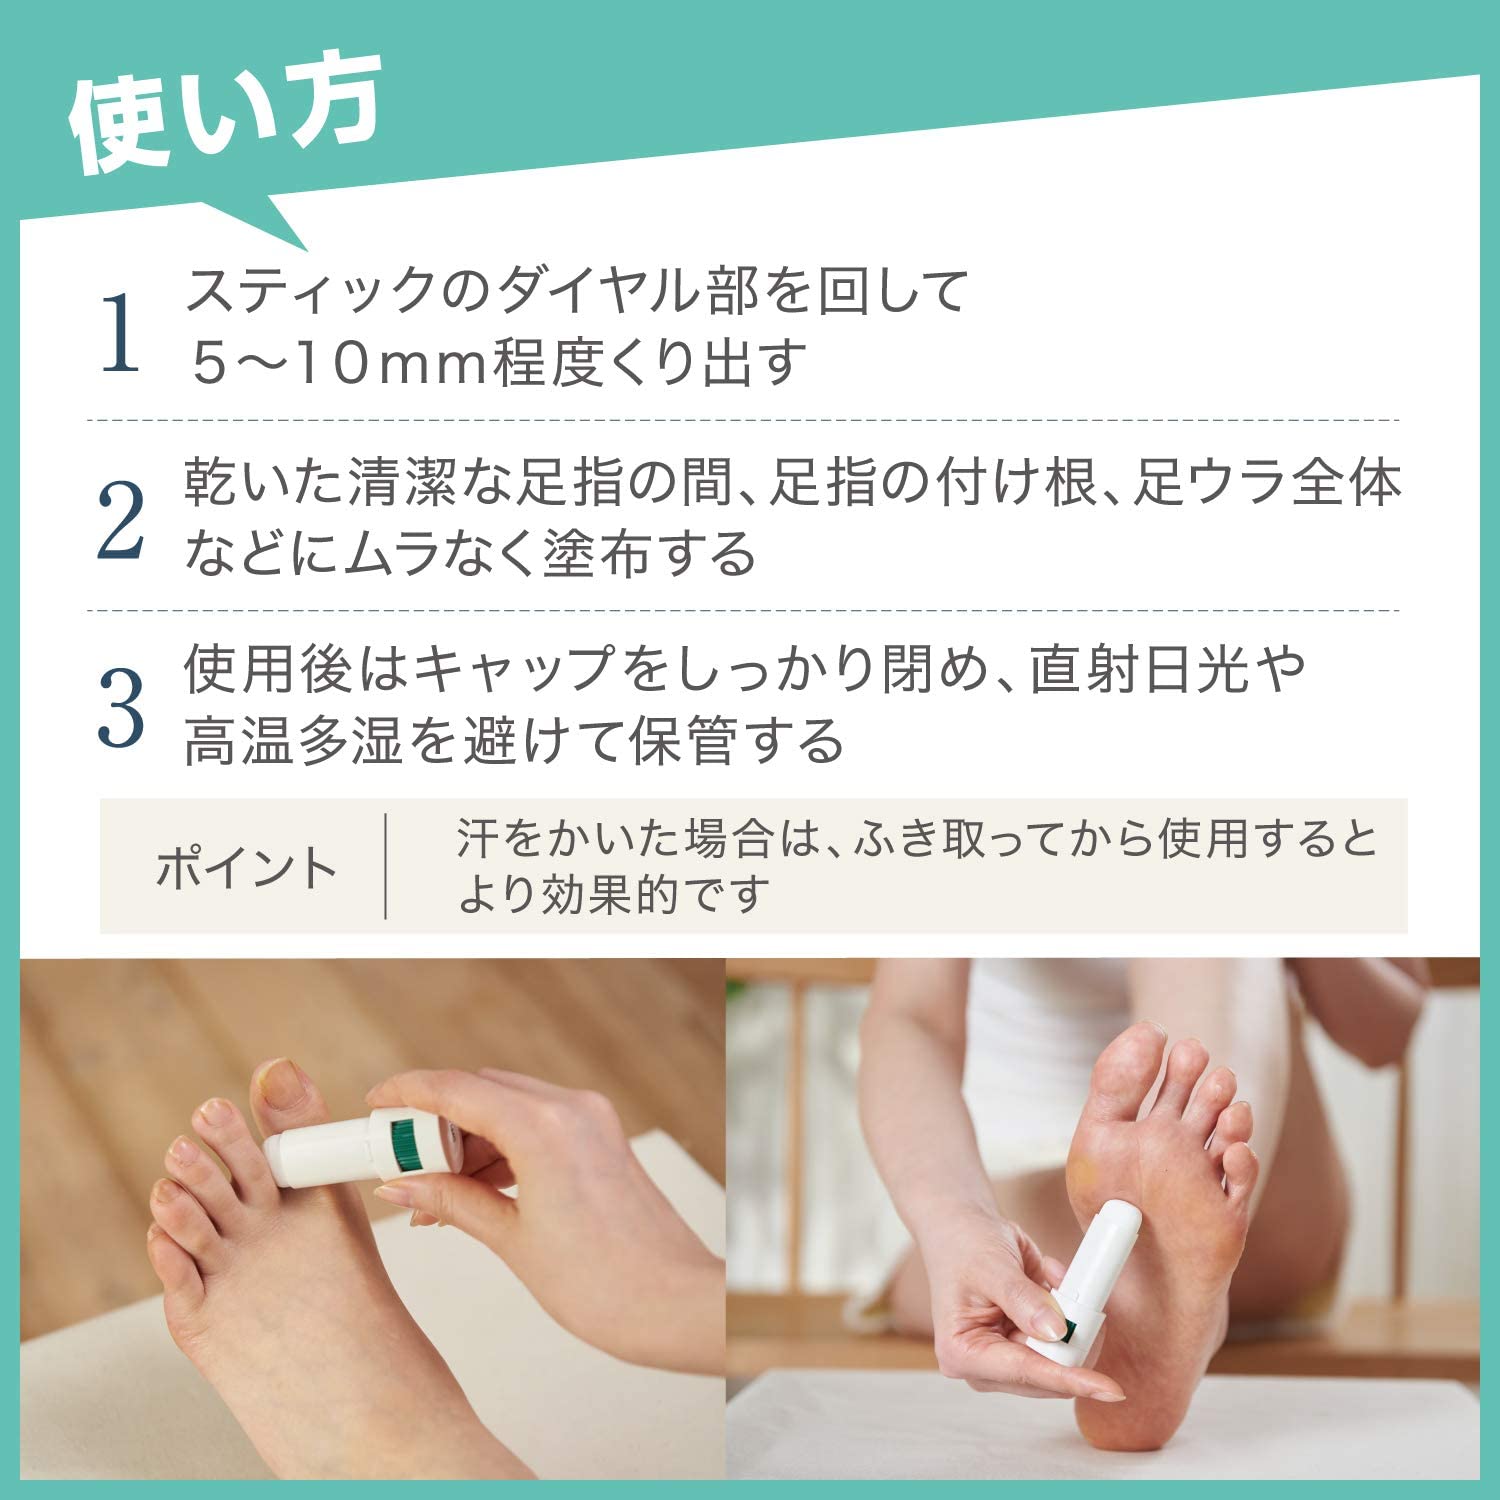 Deonatulle Toe Finger Medicated Soft Stone - 7g - NihonMura